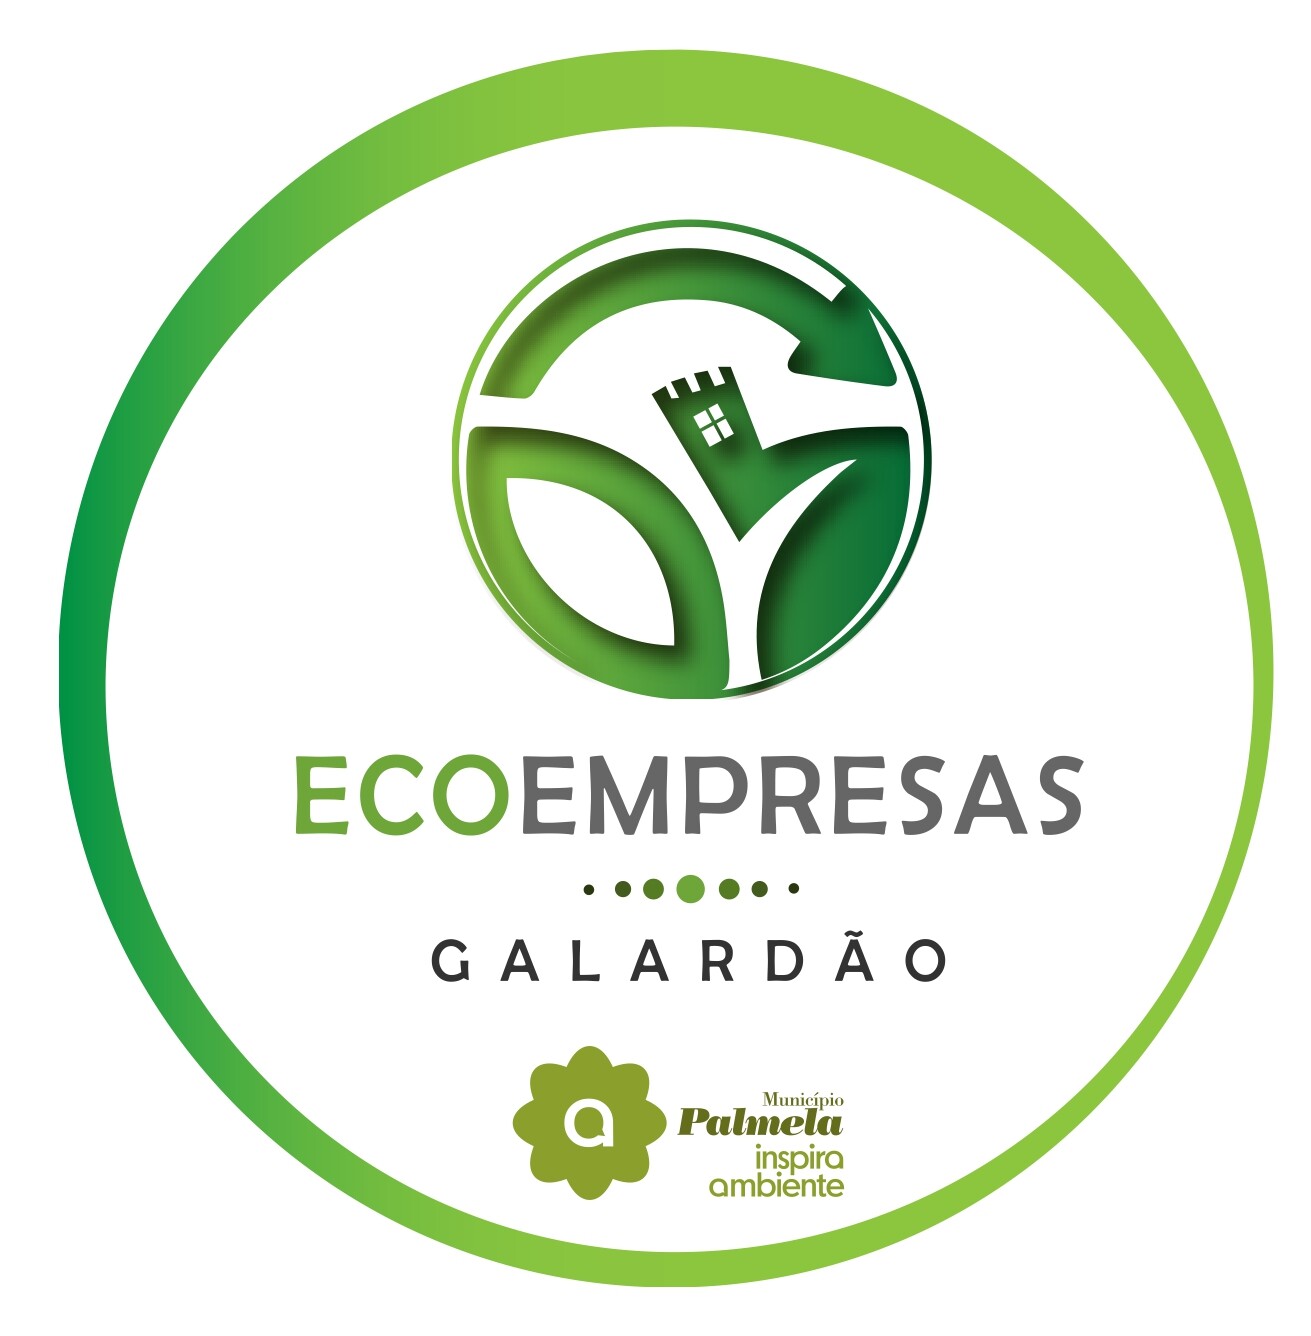 Município atribui Selo Verde a Eco Empresas do concelho  